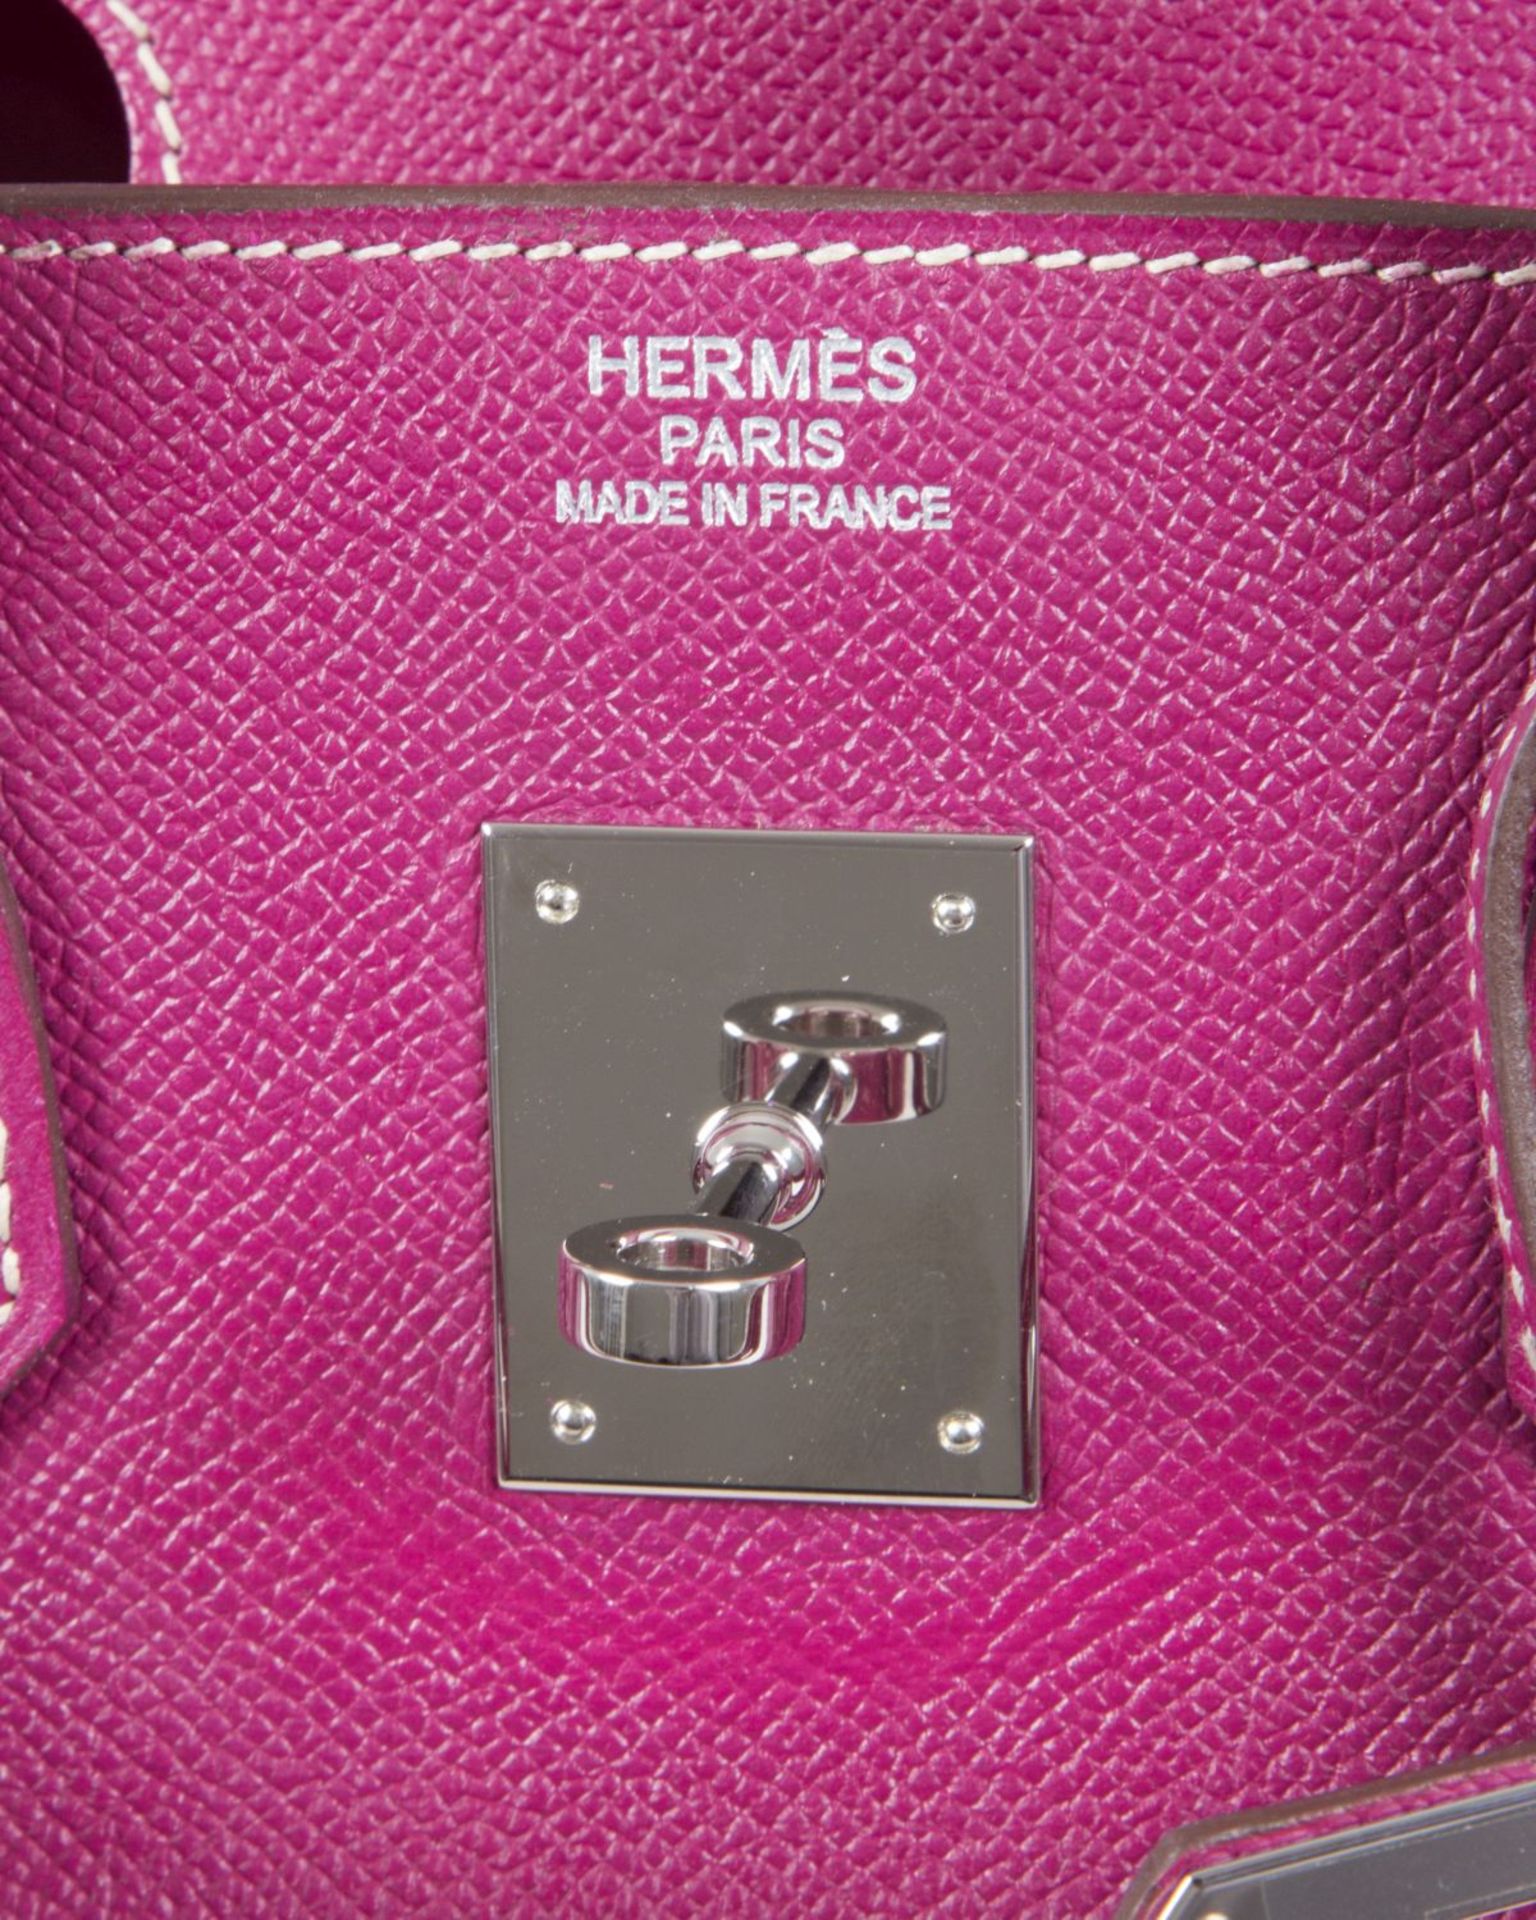 Hermès ''Birkin Bag 35'' Kalbsleder in Fuchsia mit weißer Naht. Beschläge mit Palladiumauflage. Trap - Bild 4 aus 10